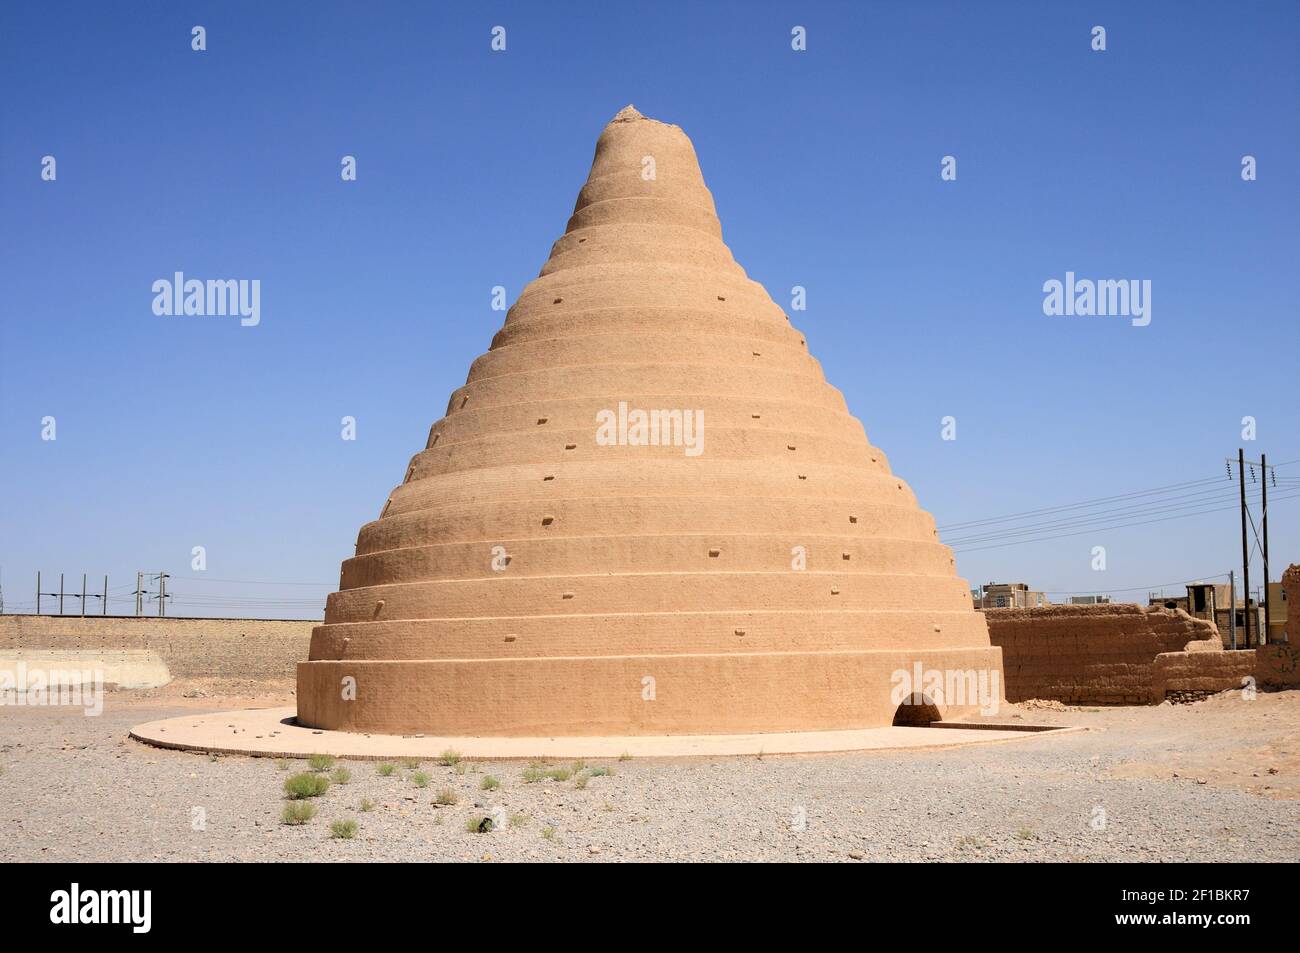 Una cisterna medievale fatta di mattoni di fango. Queste cisterne sono situate nelle zone rurali dell'Iran. Le cisterne soddisfano le esigenze idriche dei passeggeri. Foto Stock